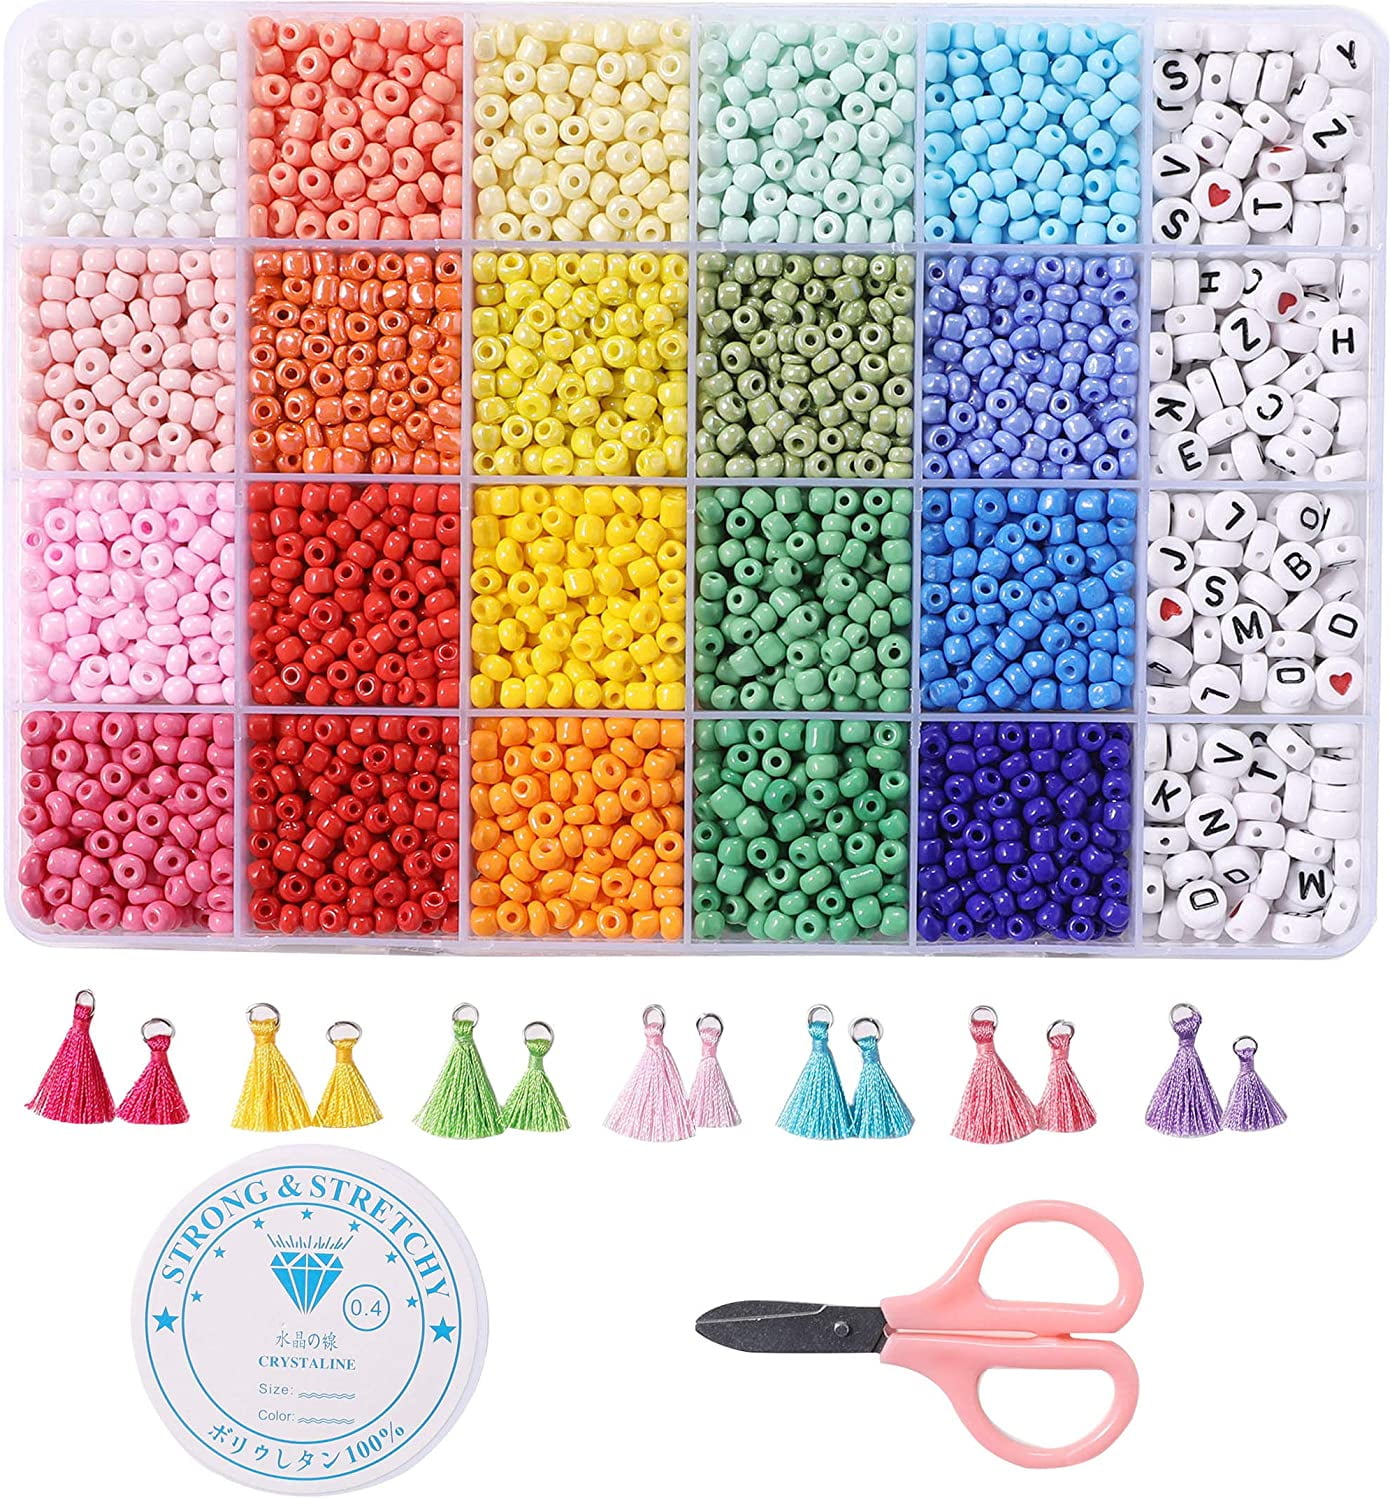 Anko Rainbow Melty Beads Kit